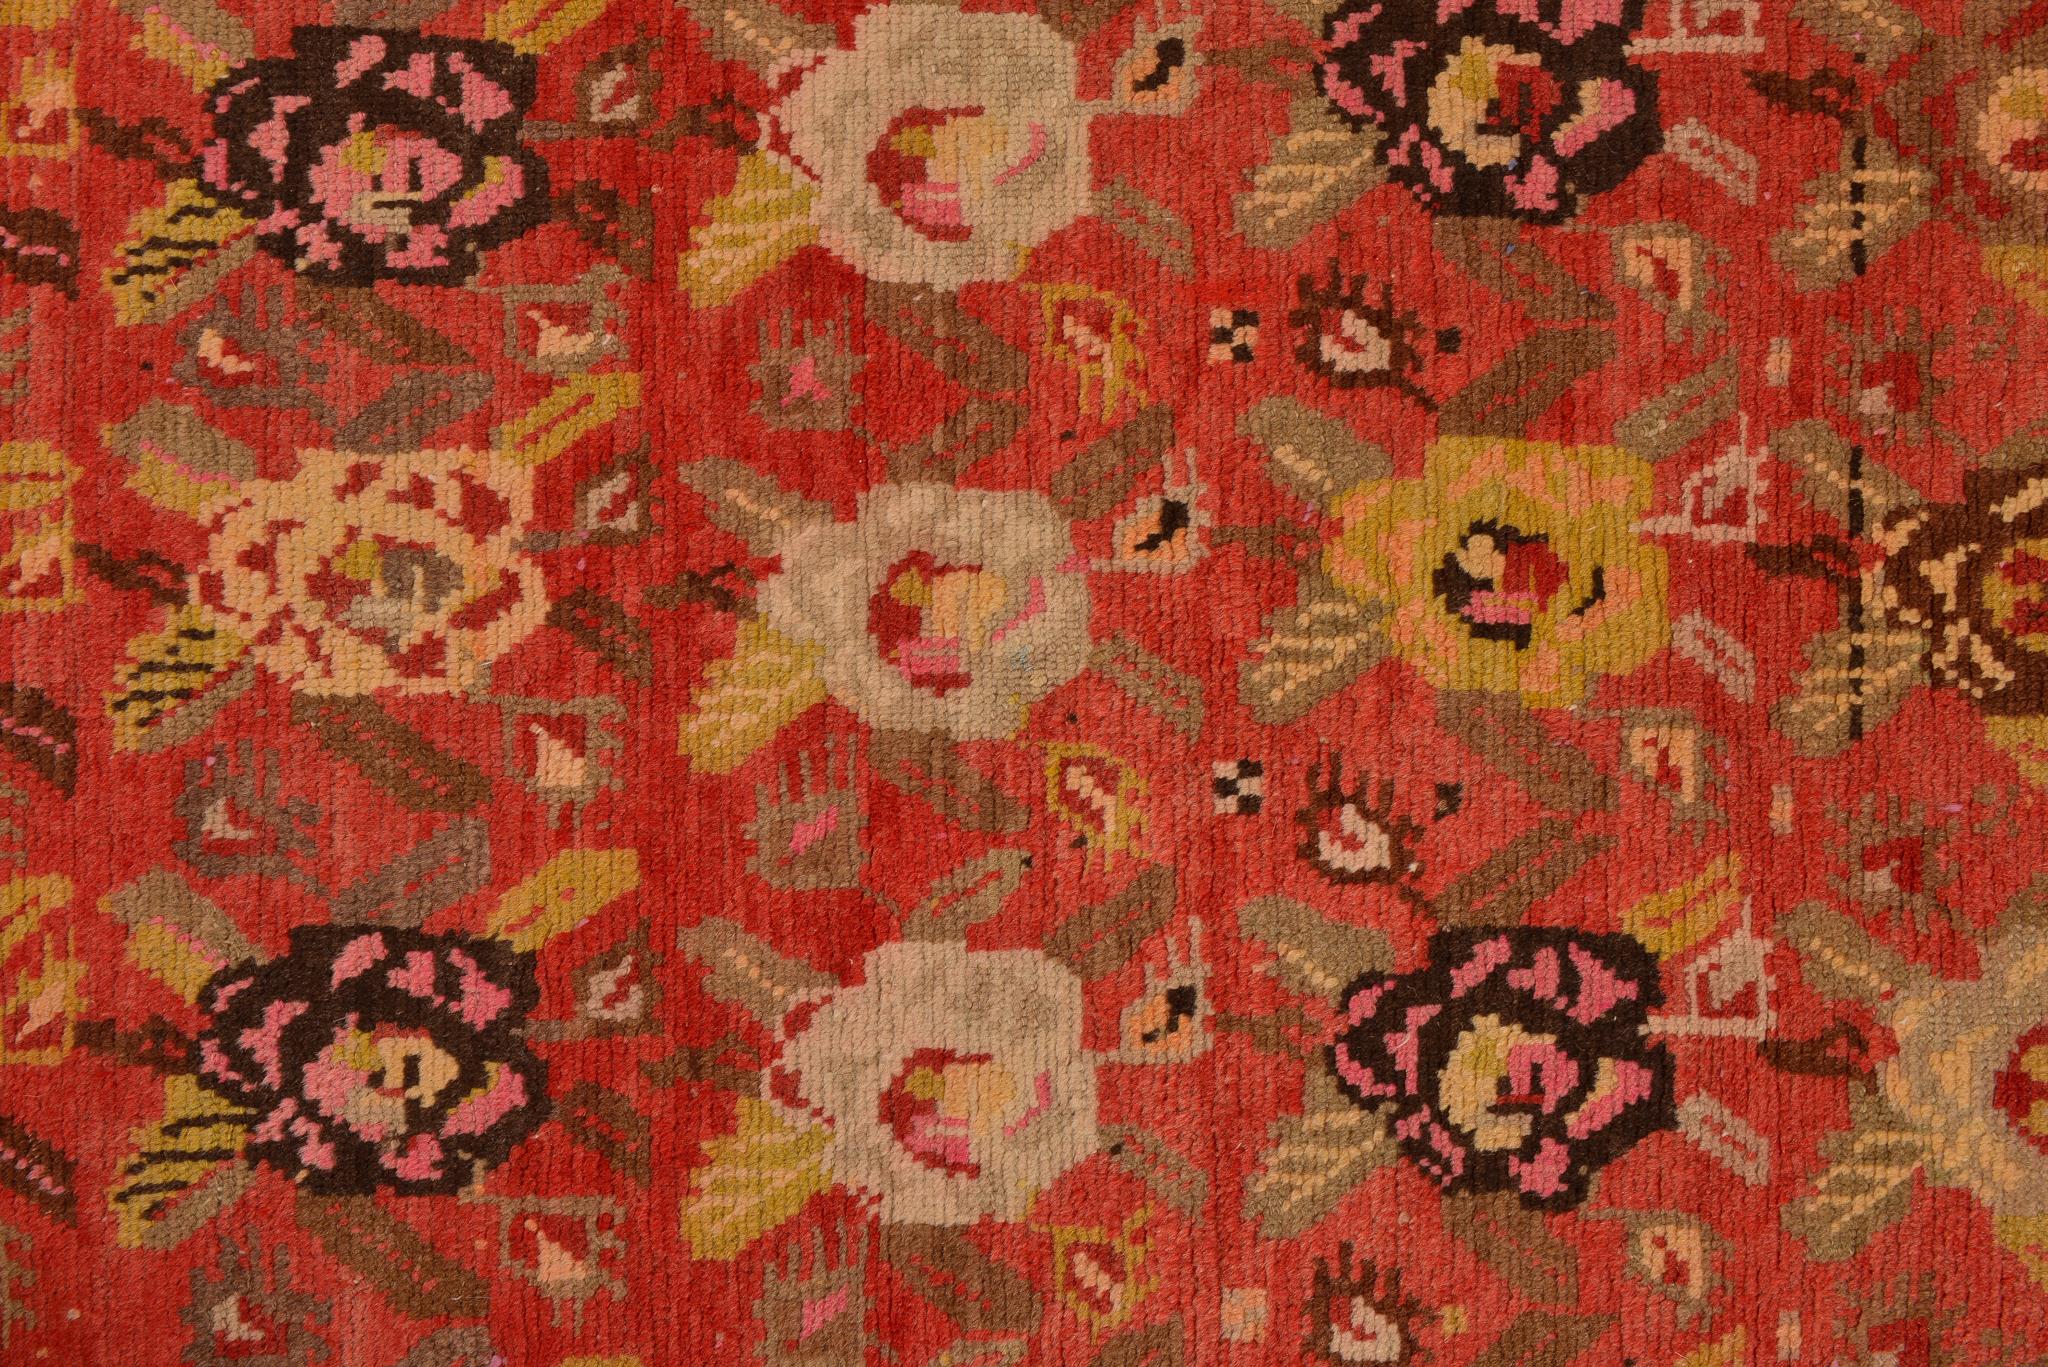 1259 - Elegantes Erscheinungsbild und warme Farben machen diesen Garebagh-Teppich besonders angenehm.
In diesem Fall sind die weichen Rosen über einer warmen Korallenfarbe verstreut: Ich liebe Rhese-Teppiche ... Es gibt sie überall, wo man sie